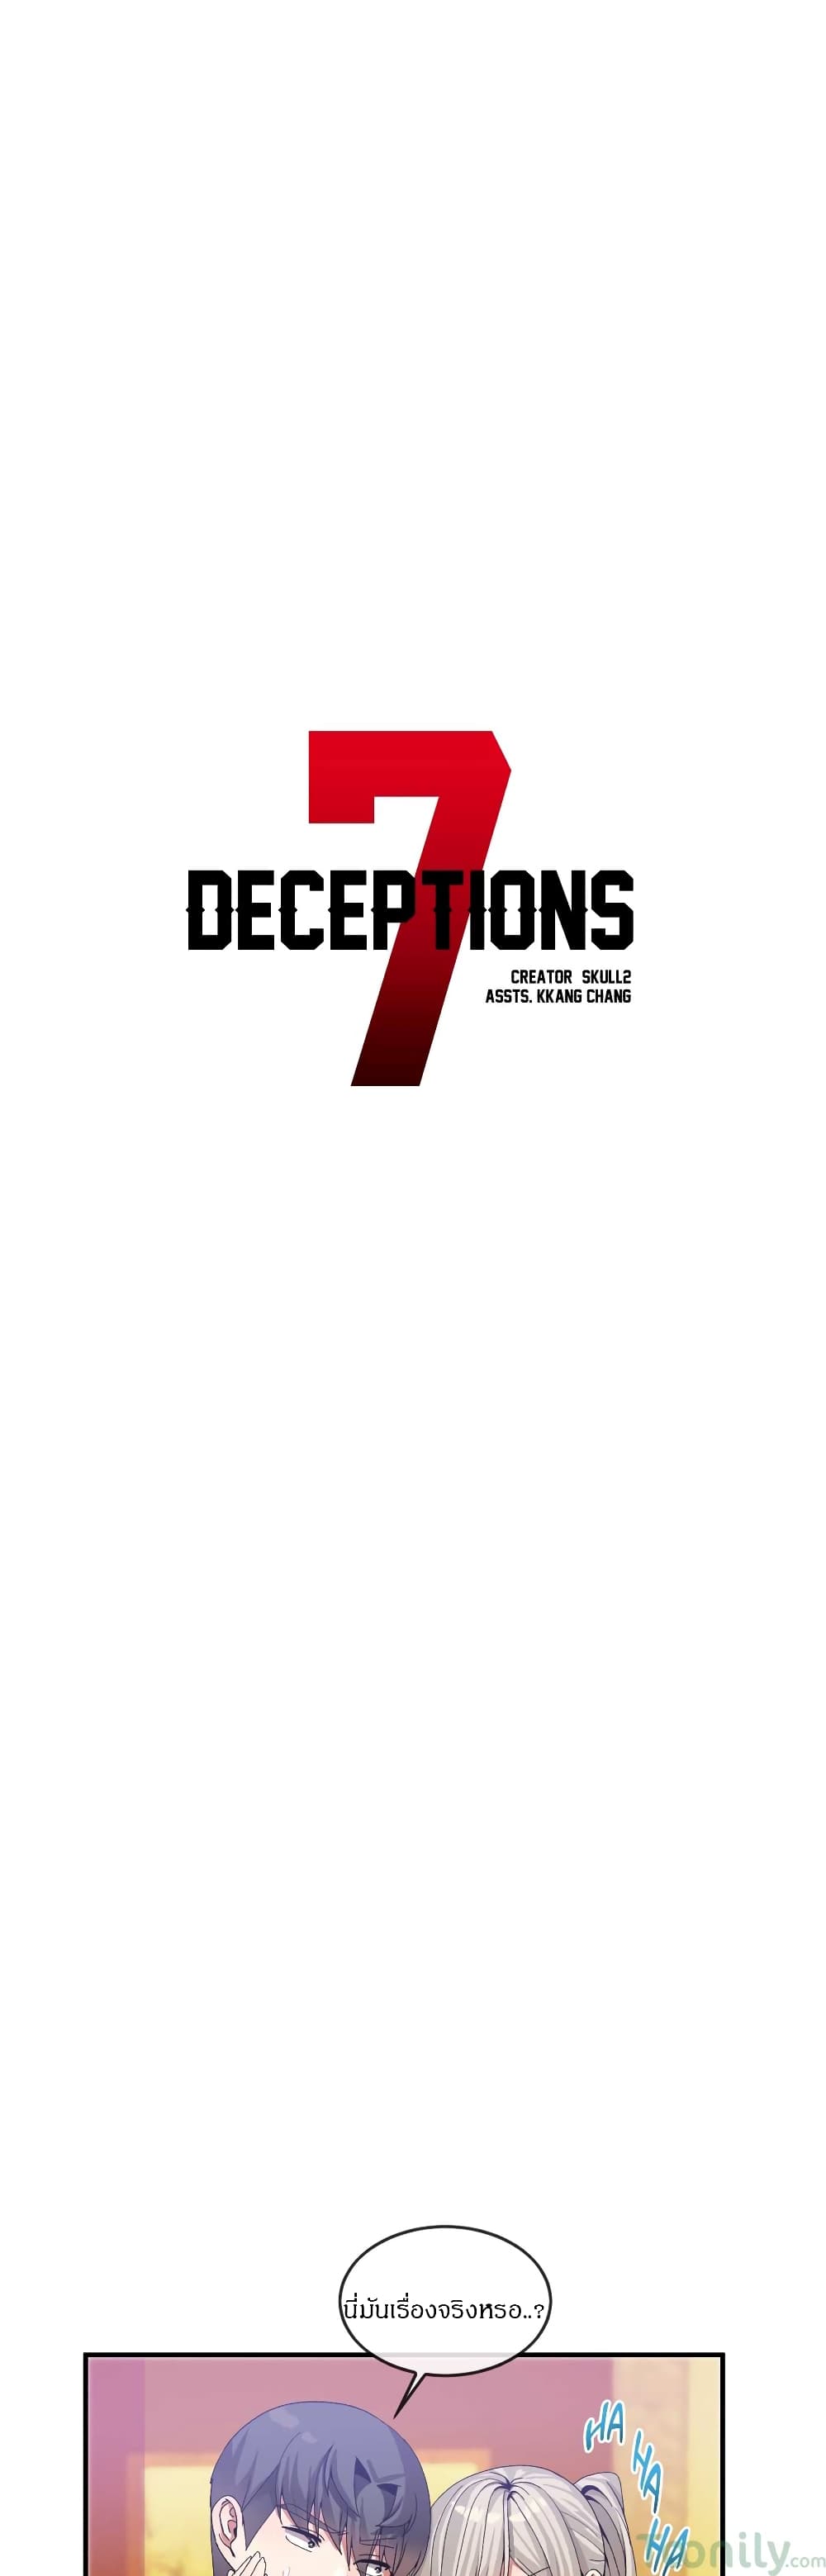 Deceptions 30 (3)